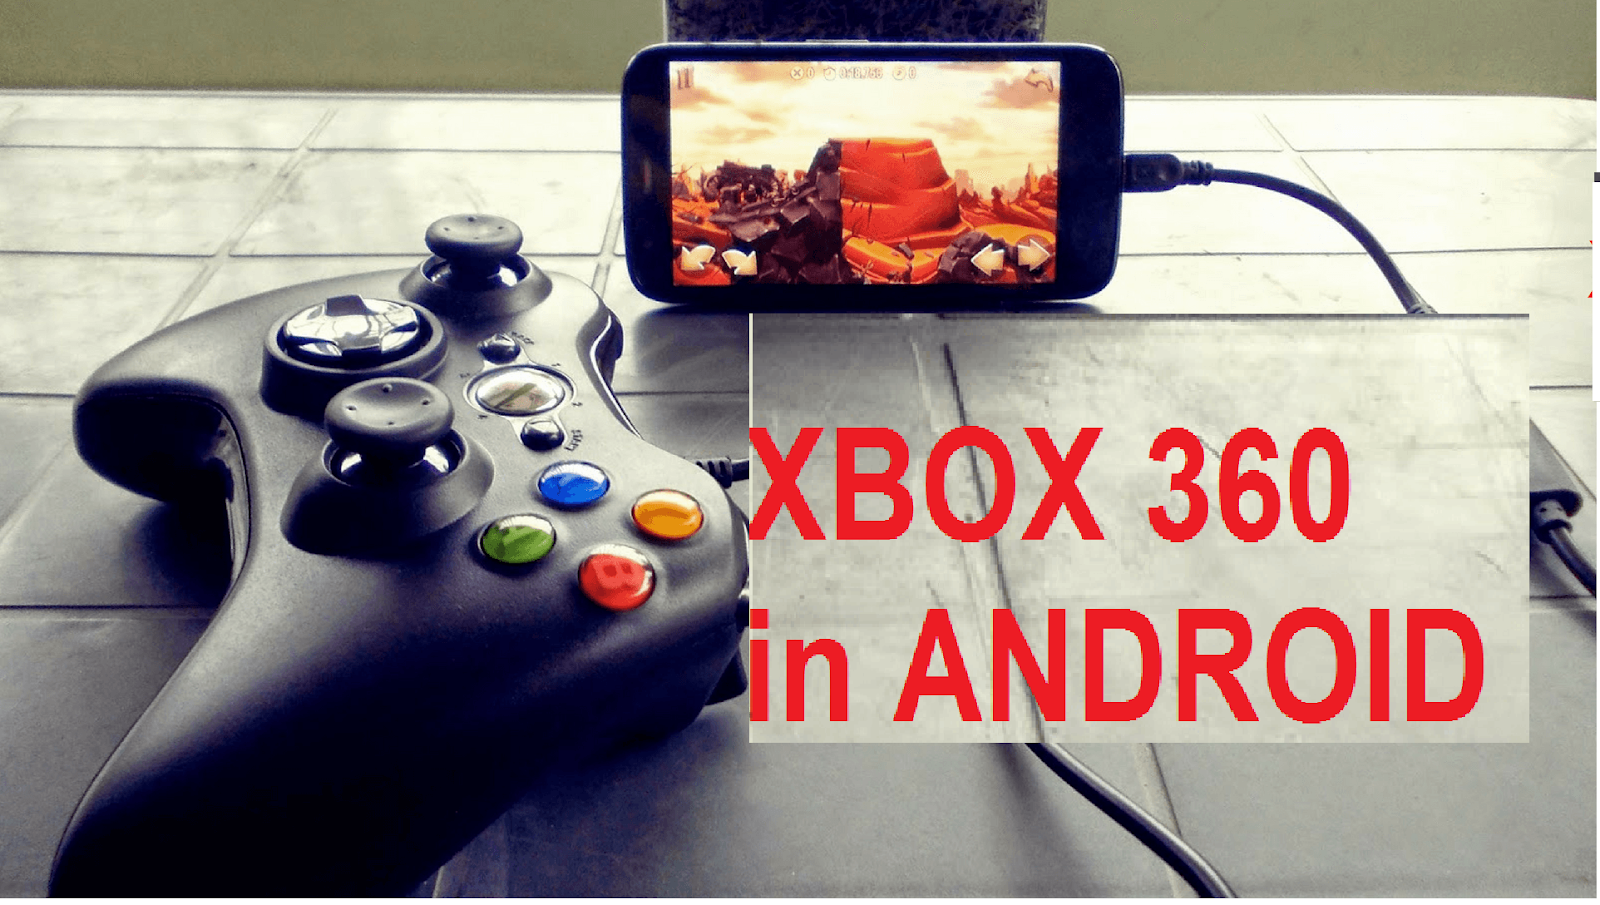 Xbox 360 эмулятор андроид. Эмулятор хбокс 360 на андроид. Xbox 360 Emulator Android. Игры 360 на андроид